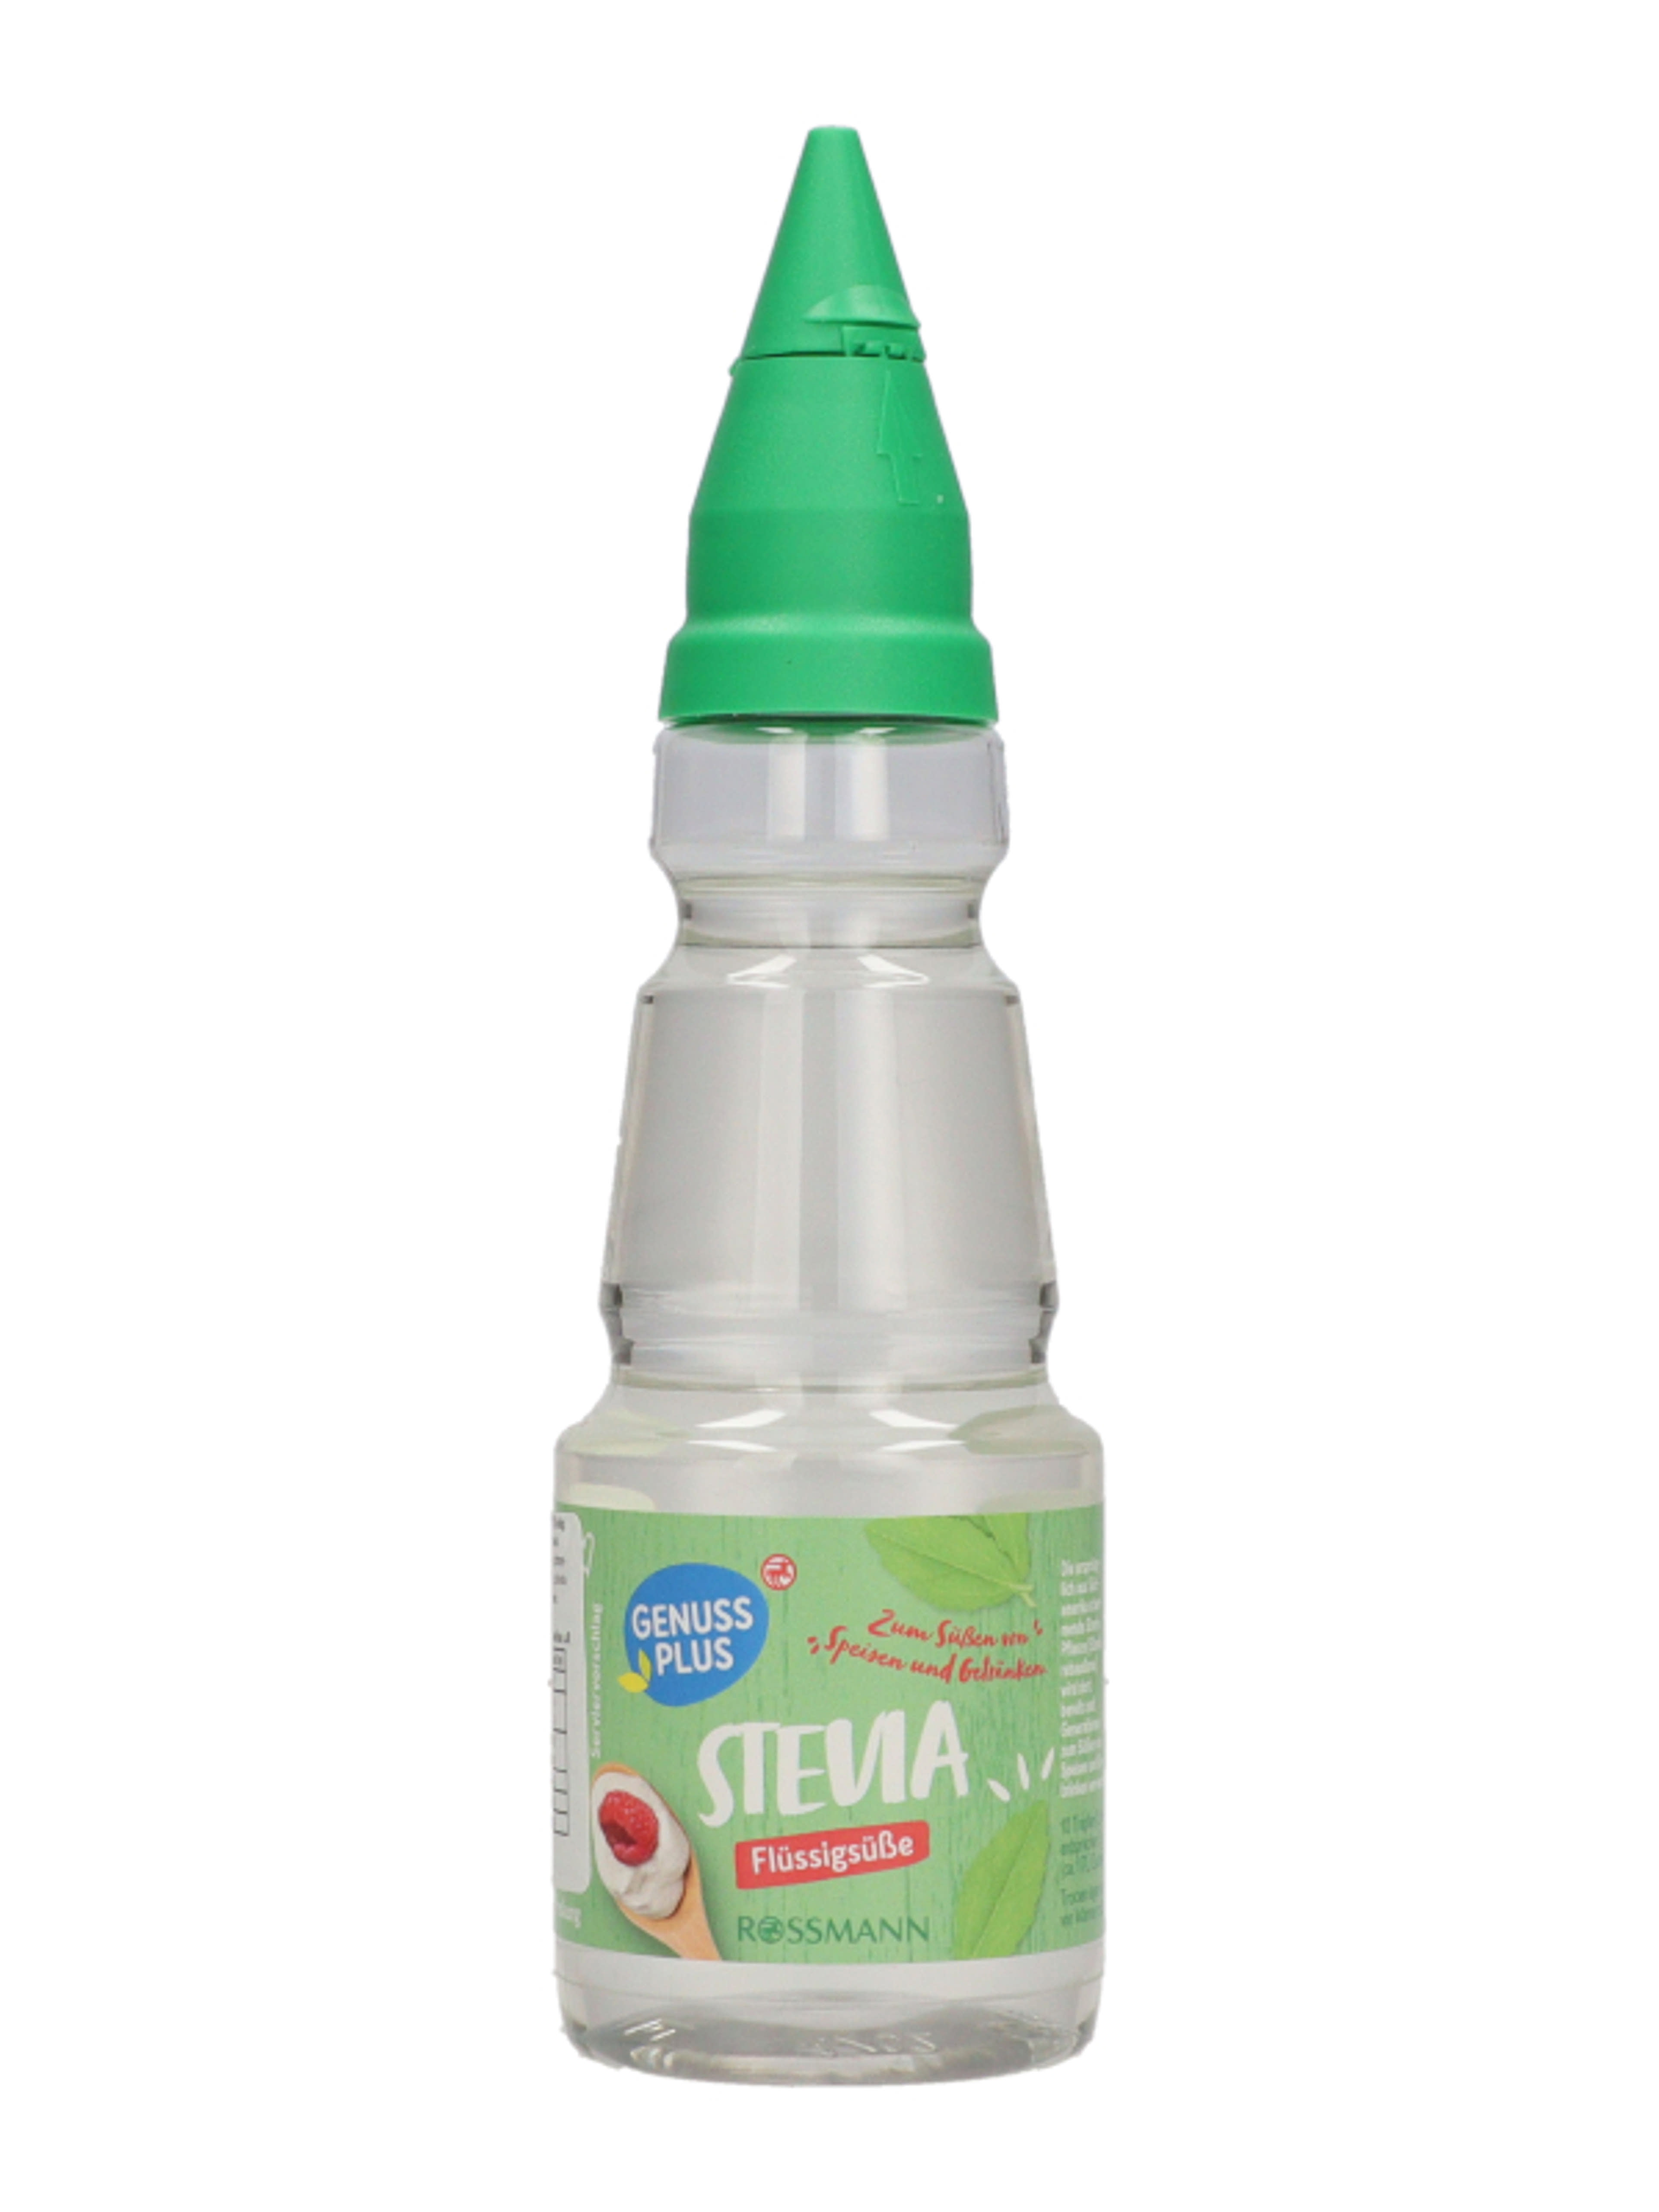 Genuss plus stevia folyékony édesítőszer - 125 ml